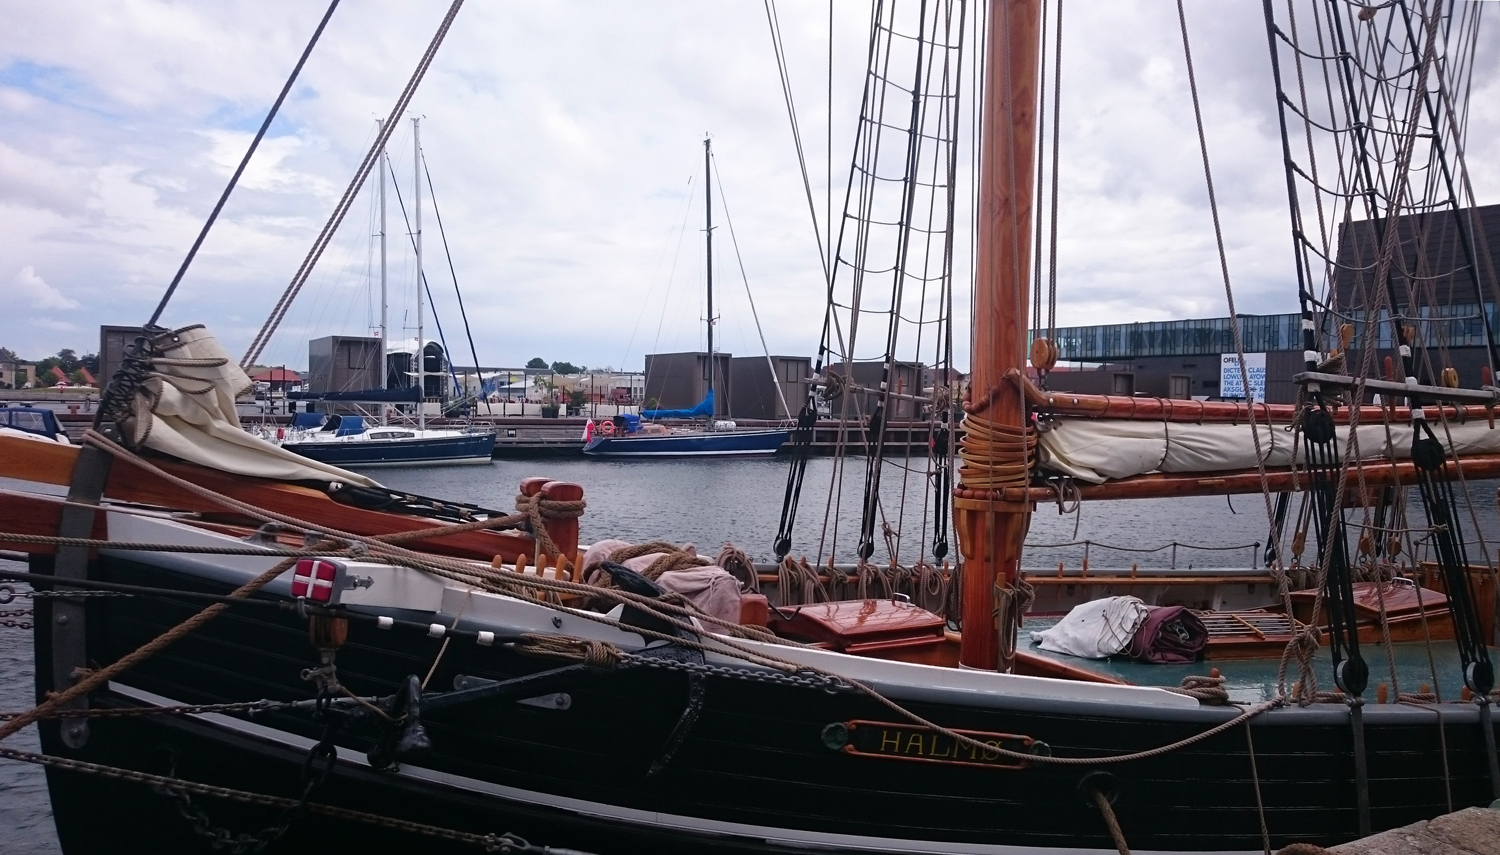 Martina Büttner: Copenhagen Harbour with boats 2017